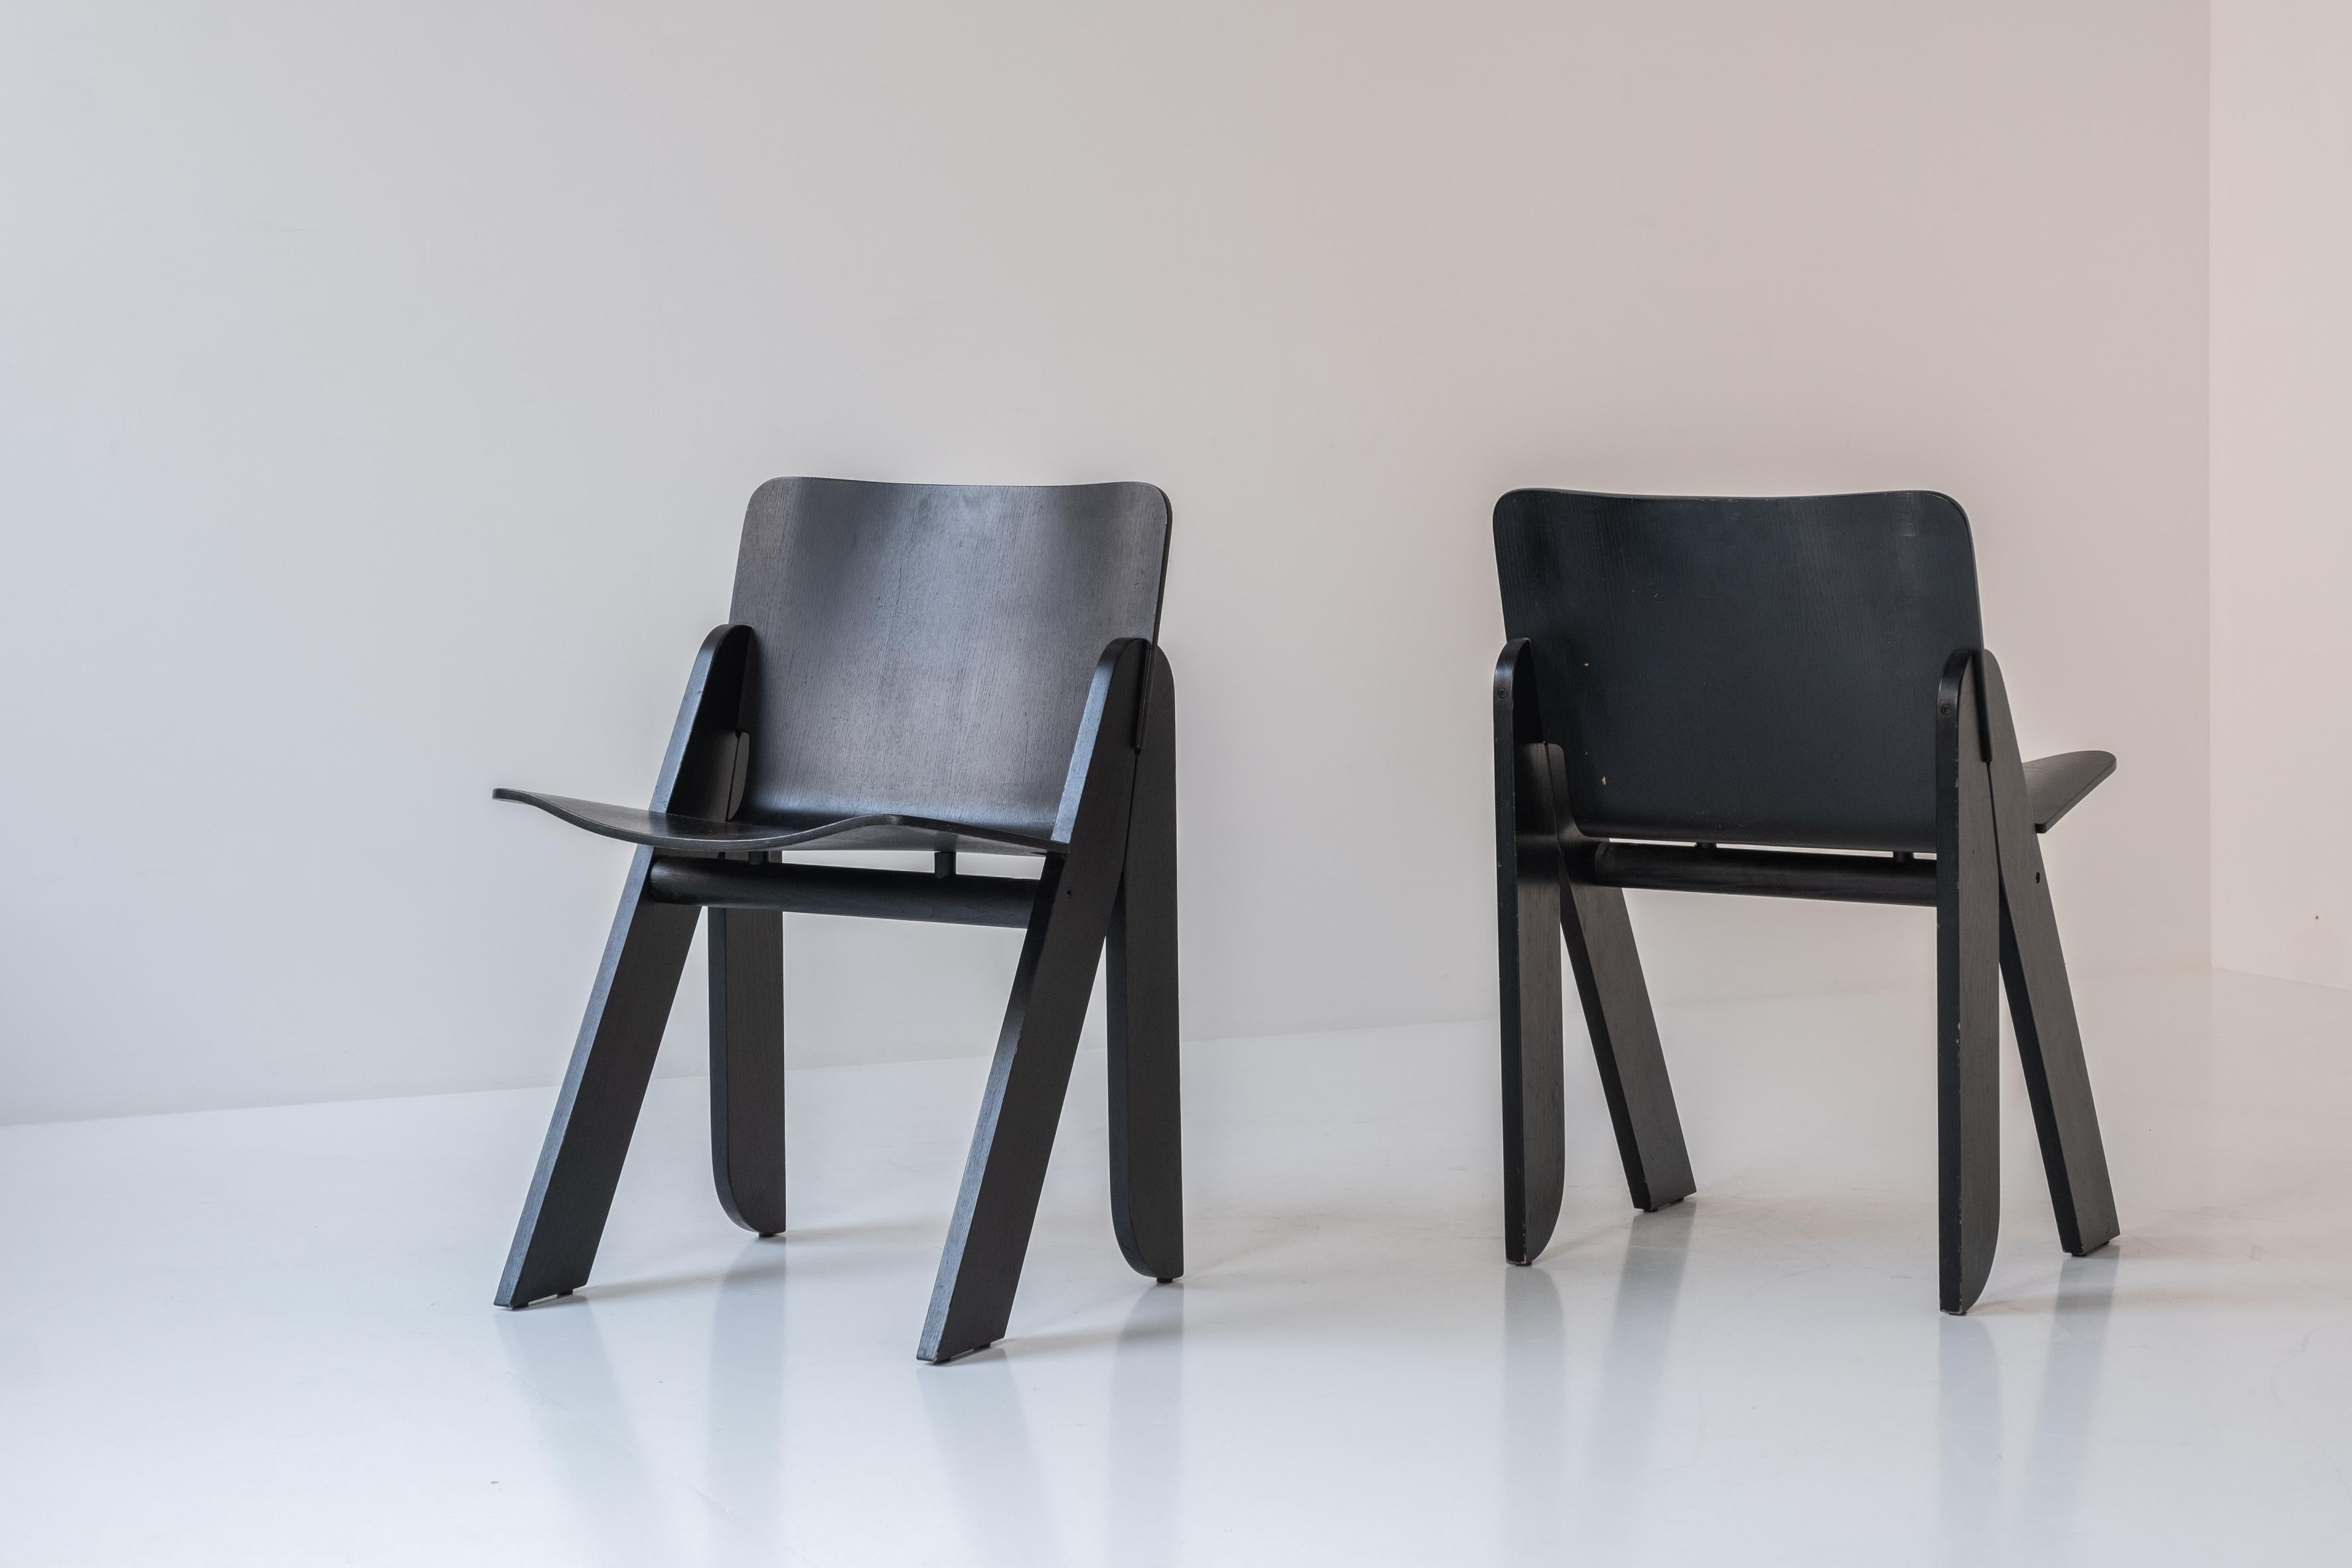 Satz von vier 'Poeta' Esszimmerstühlen von Gigi Sabadin für Stilwood, Italien, 1970er Jahre. Dieser Stuhl ist aus geformtem Eschen-Sperrholz gefertigt und befindet sich in einem sehr guten und originalen Zustand. Bewundern Sie diese seltene, schwarz